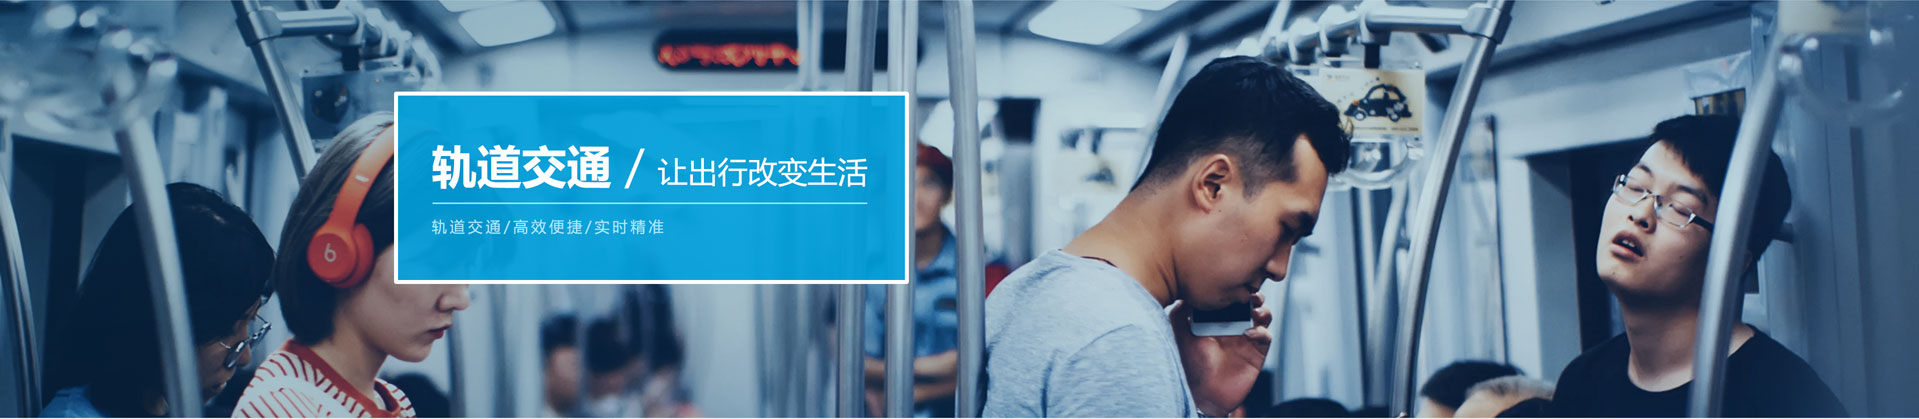 天津轨道交通乘客信息系统让出行改变生活